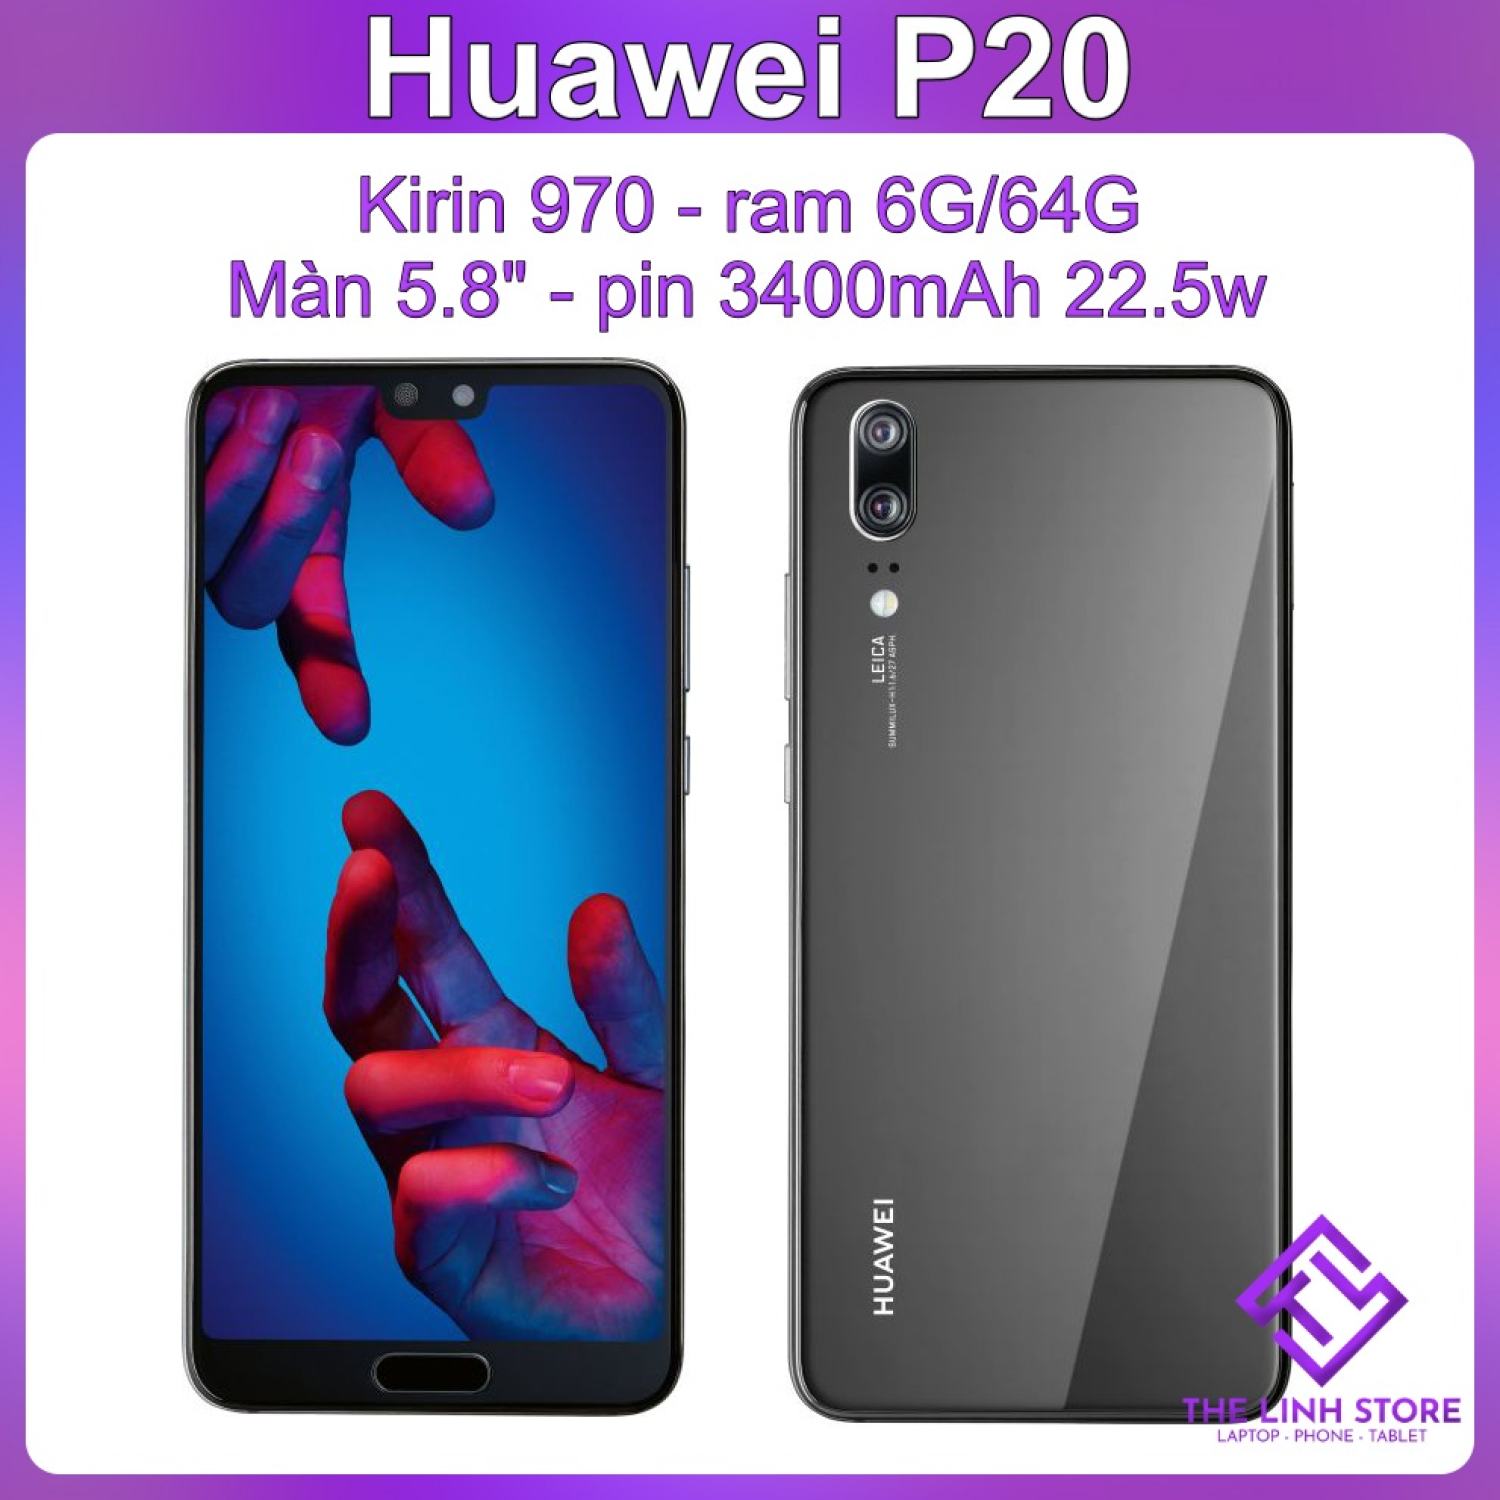 Điện thoại Huawei P20 ram 6G 64G - Kirin 970 màn 5.8 inch